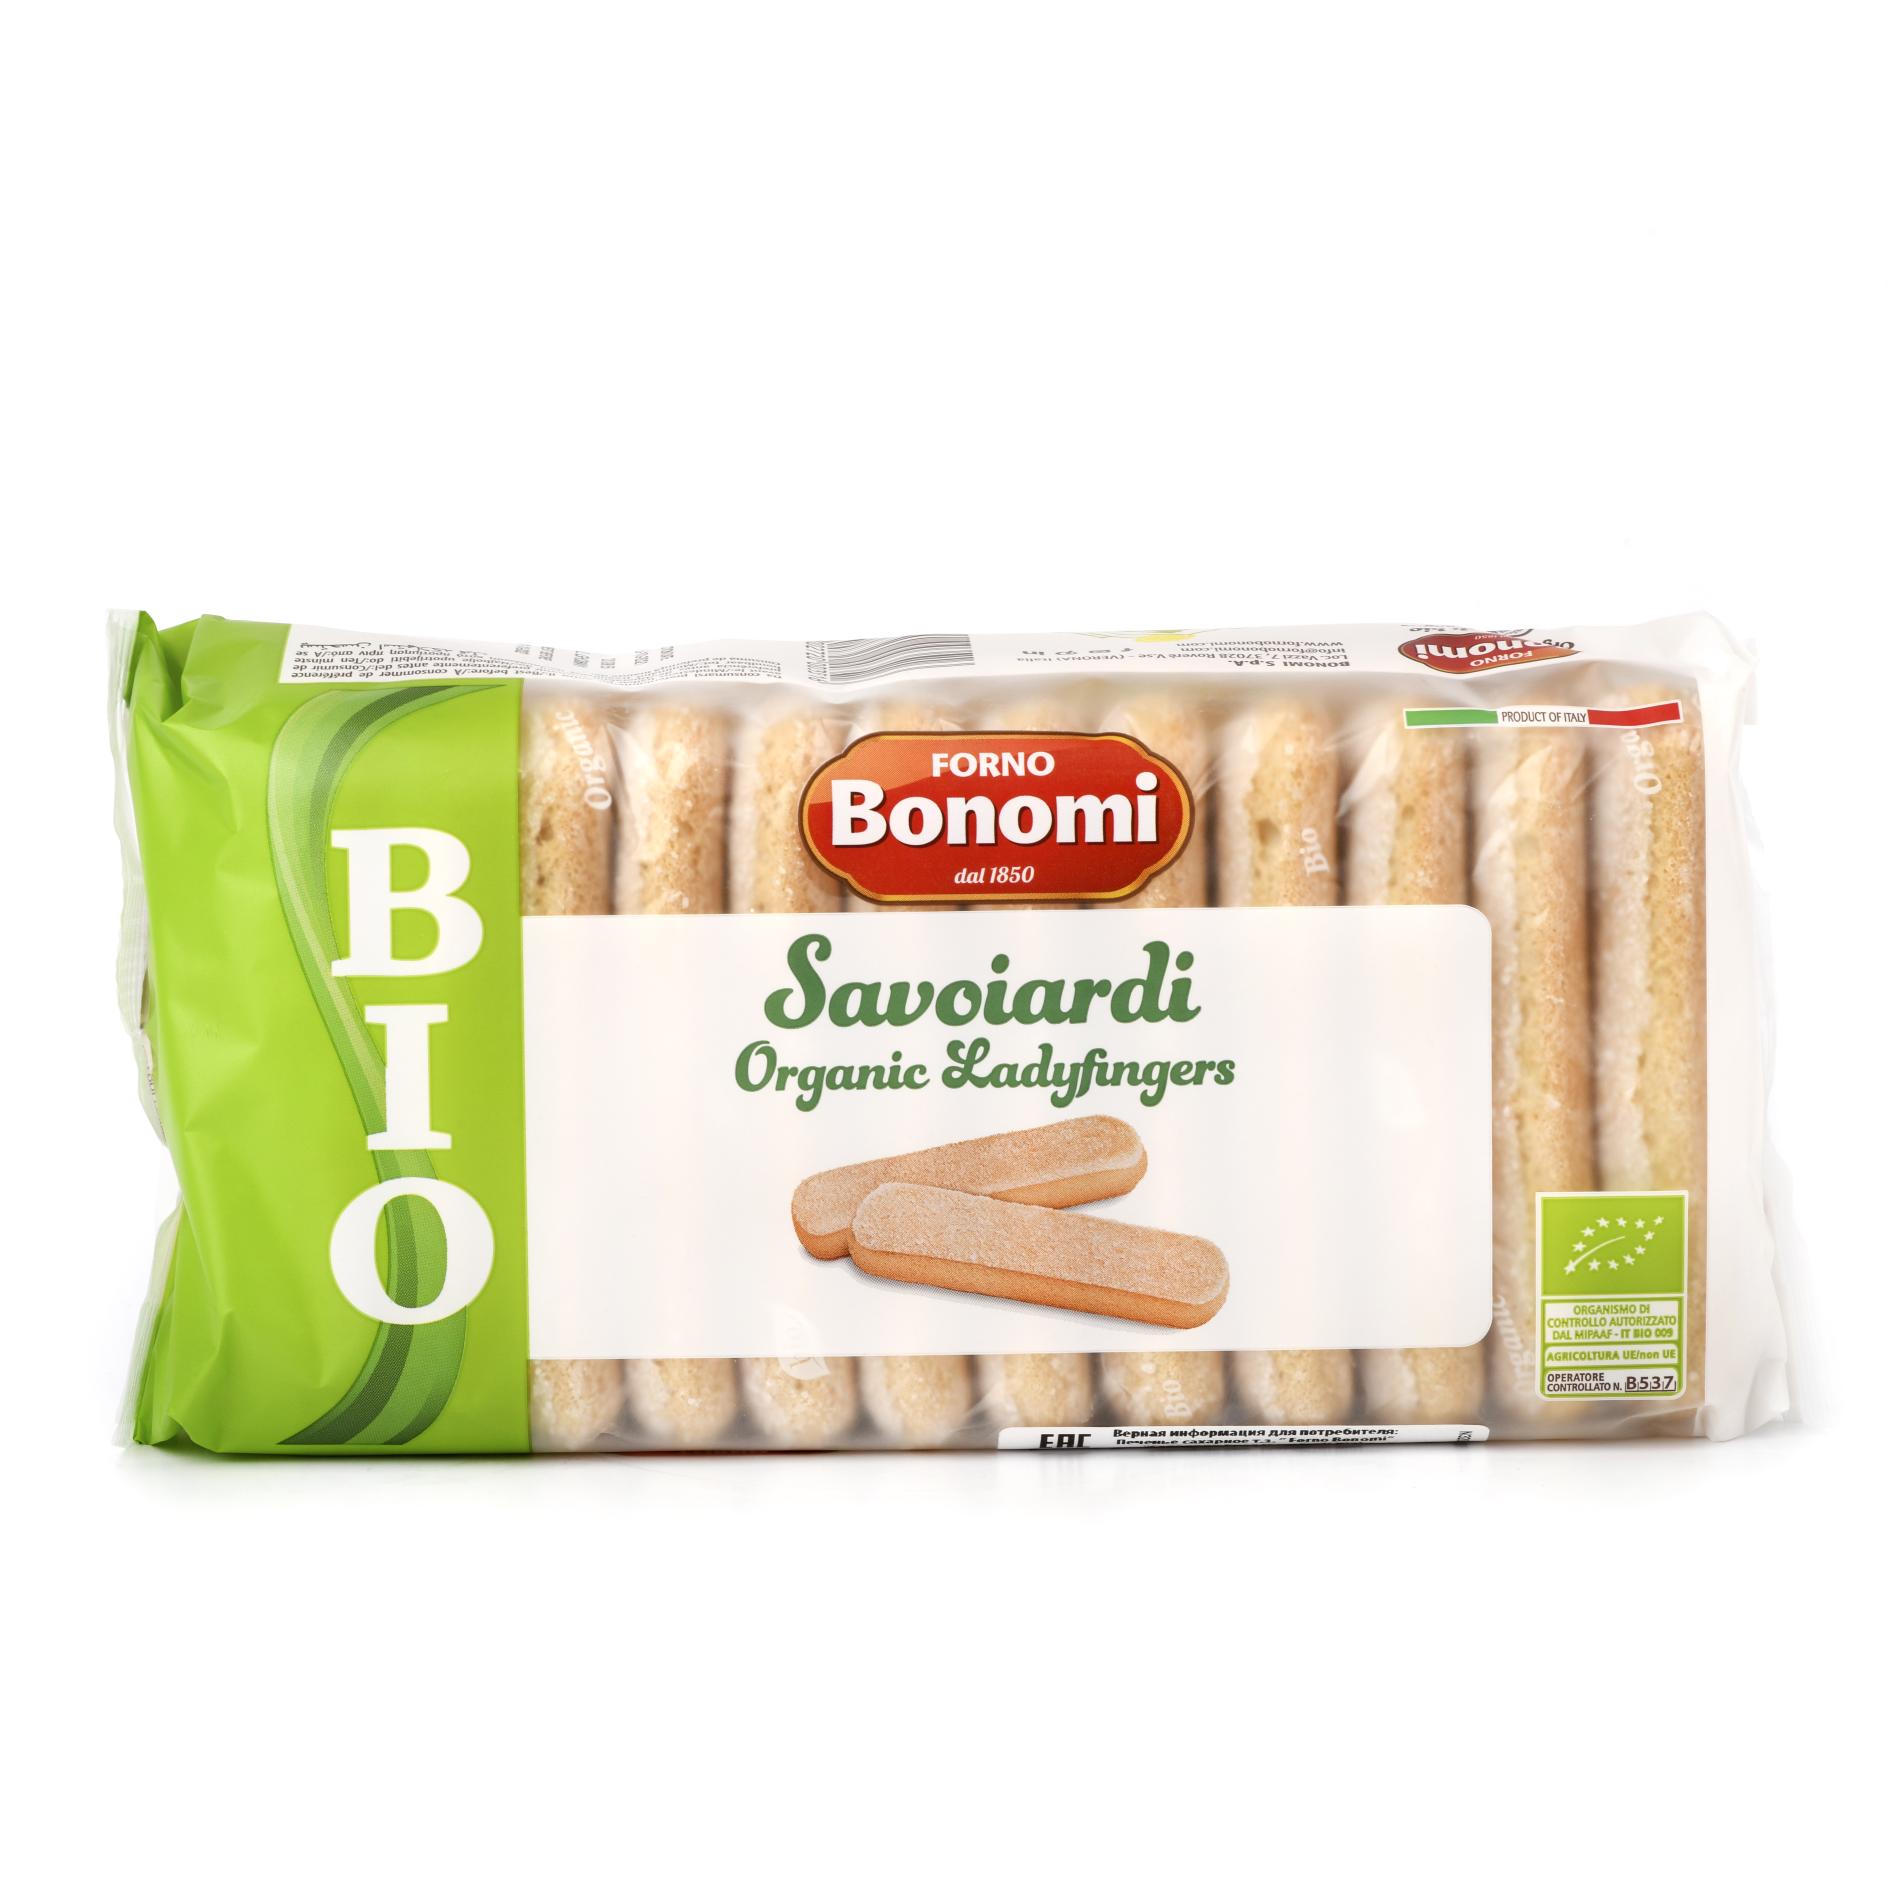 Печенье Савоярди Био, Forno Bonomi - 200 г